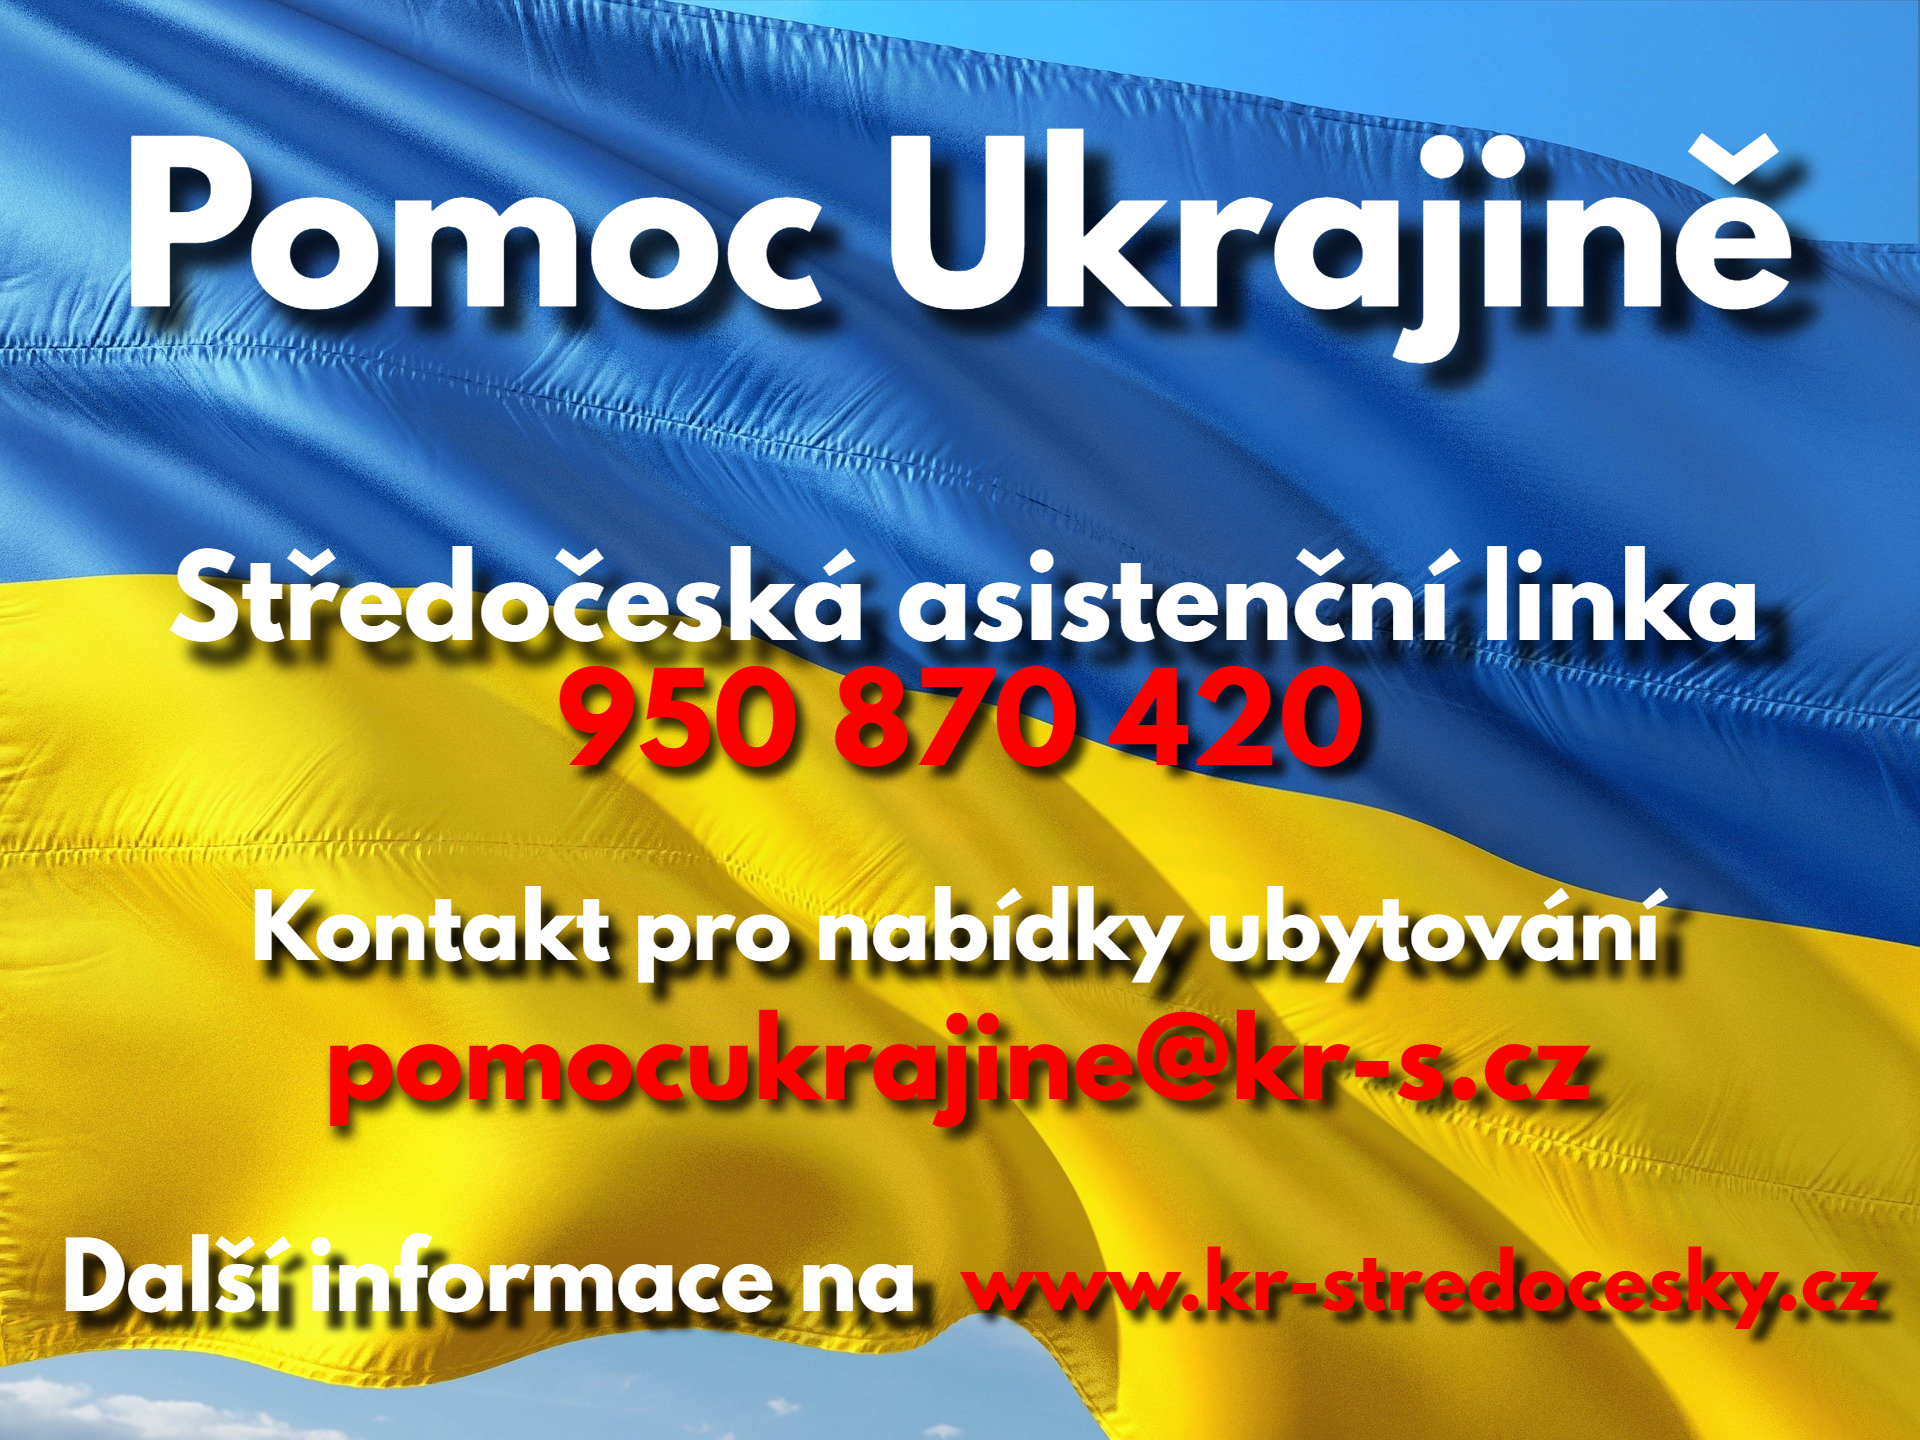 Pomoc pro Ukrajince přicházející do Česka